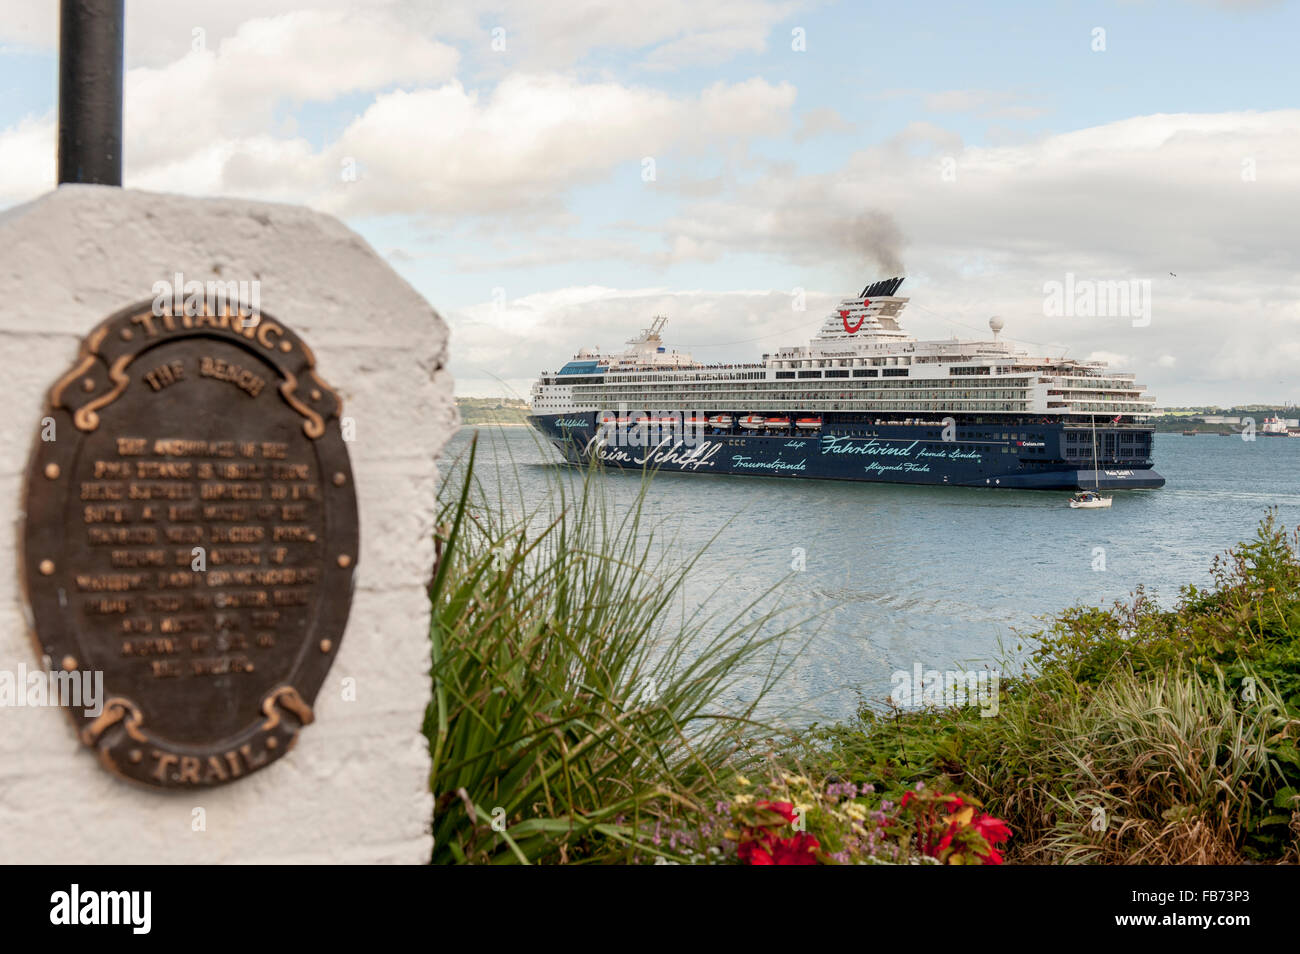 Bateau de croisière Mein Schiff adopte une plaque Titanic Trail alors qu'elle navigue de Cobh, Irlande le 27 juillet, 2015. Banque D'Images